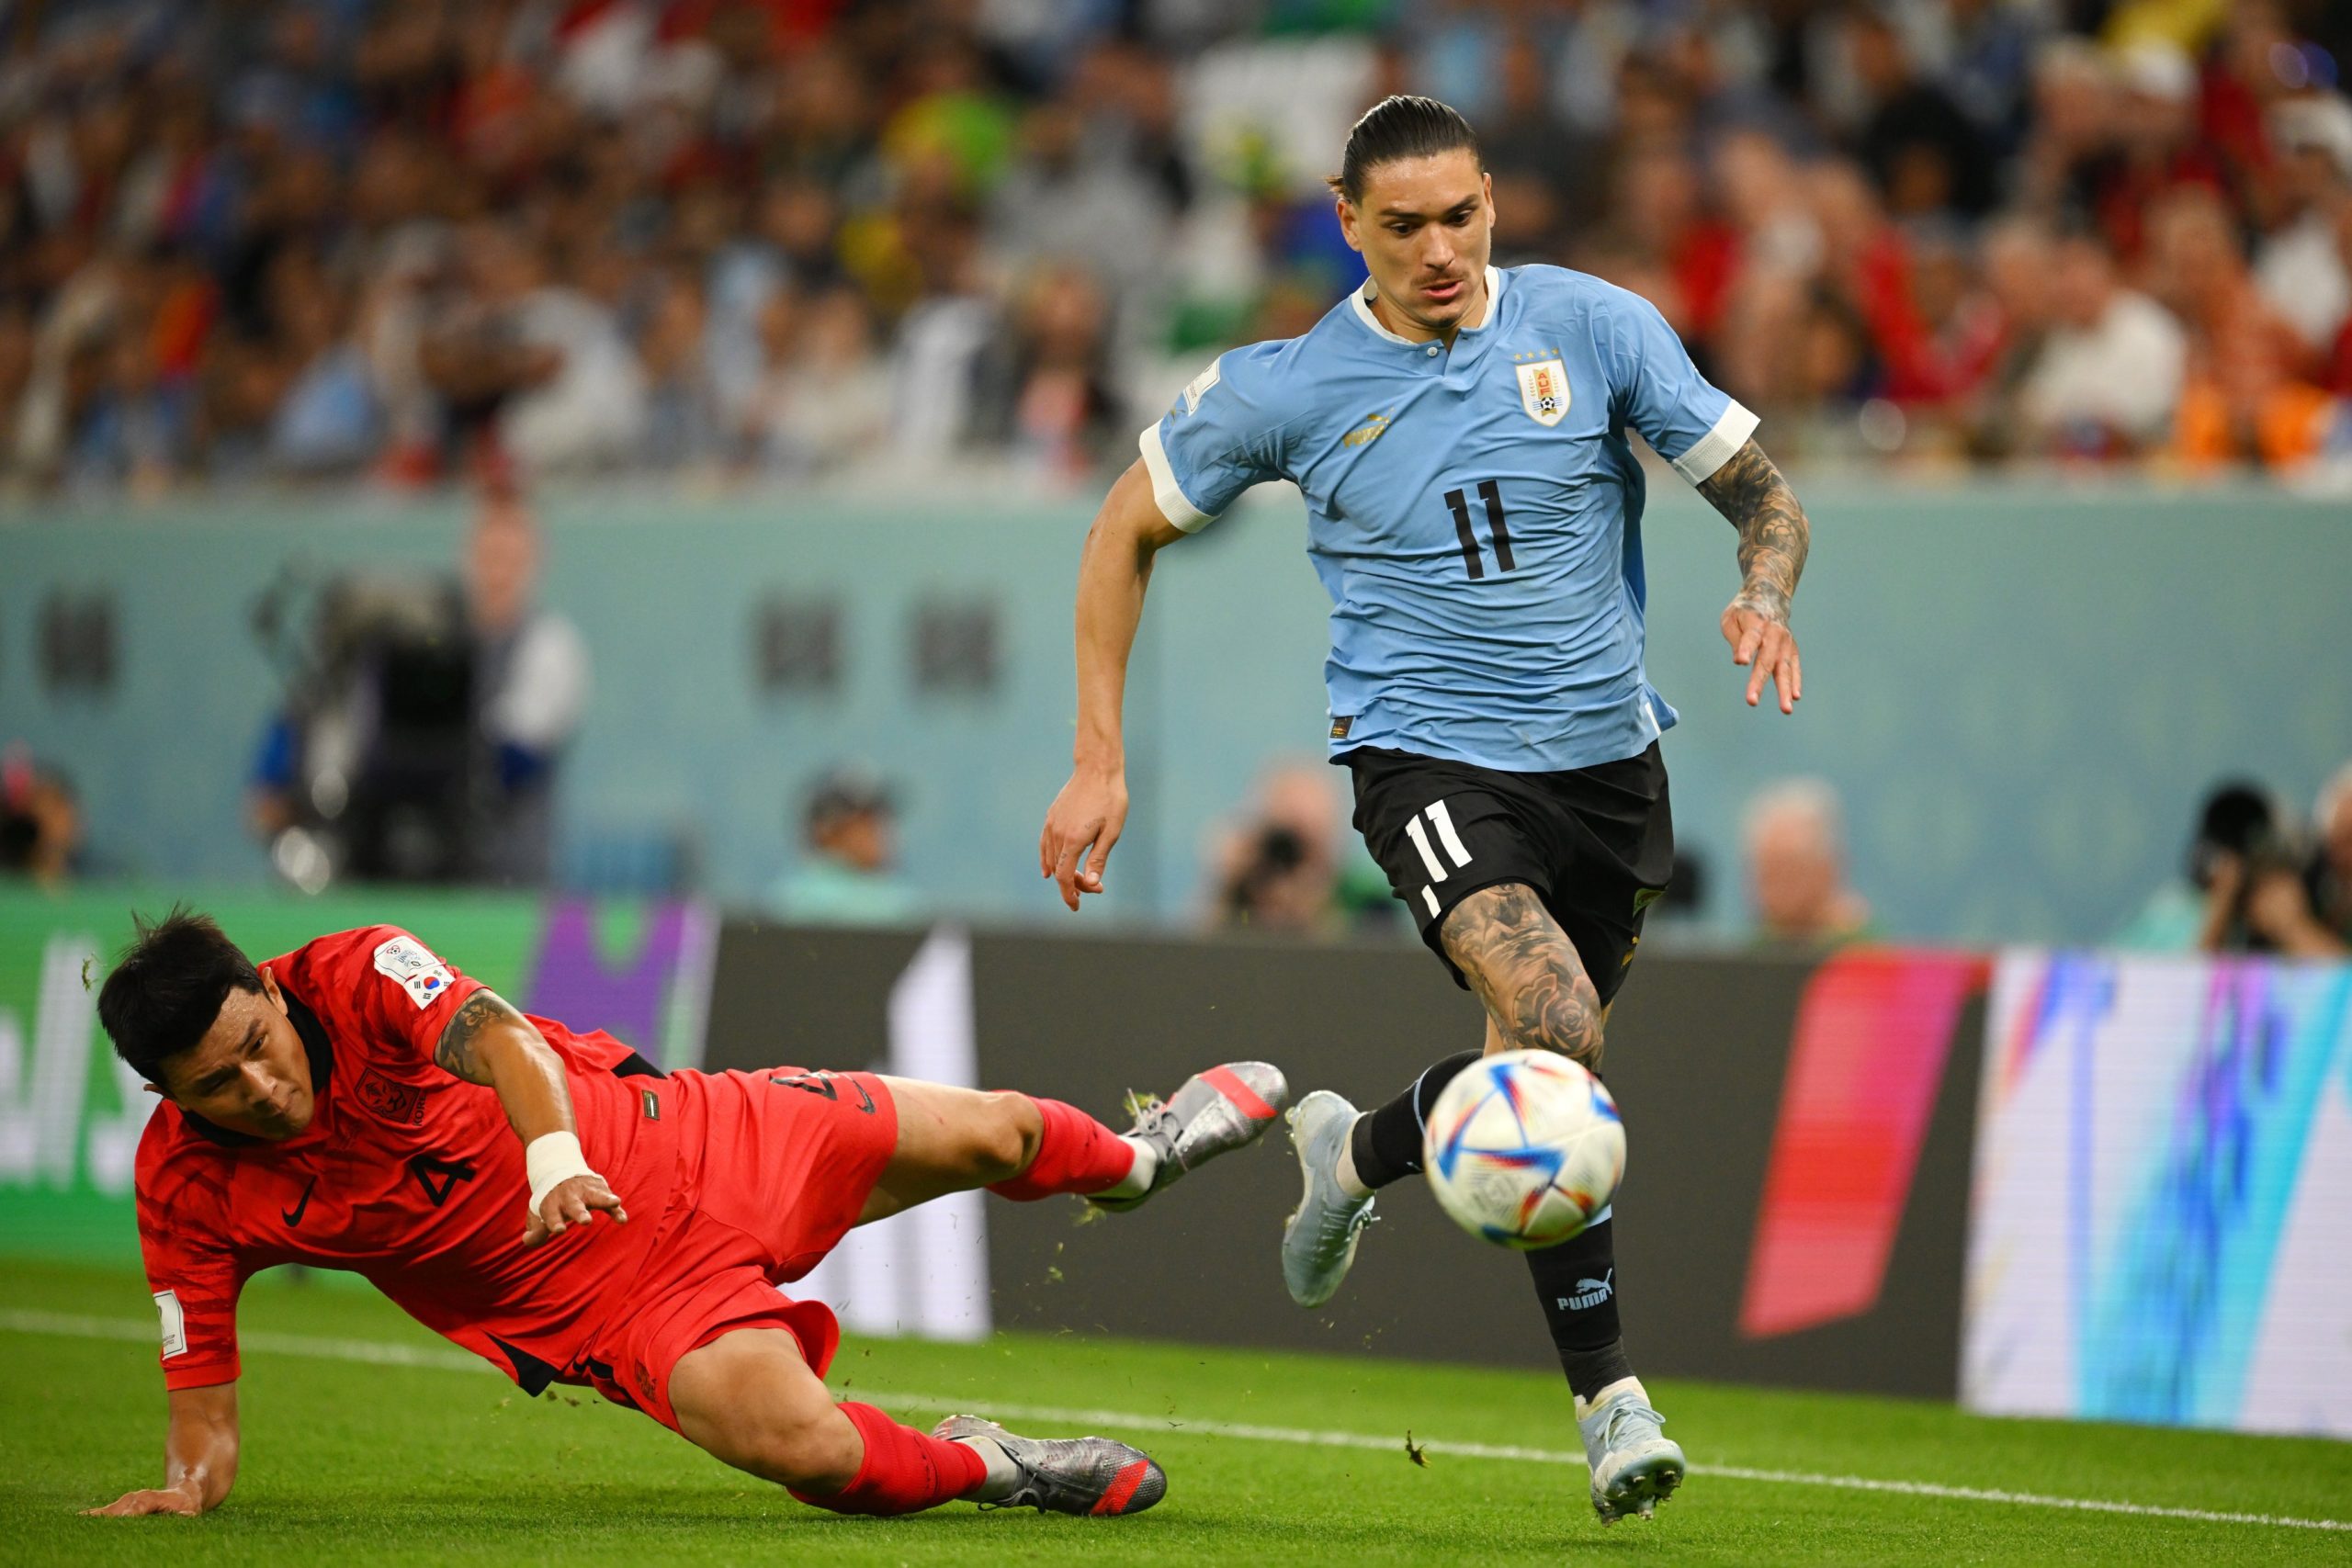 Un nuevo Uruguay afronta su primer partido luego del mundial